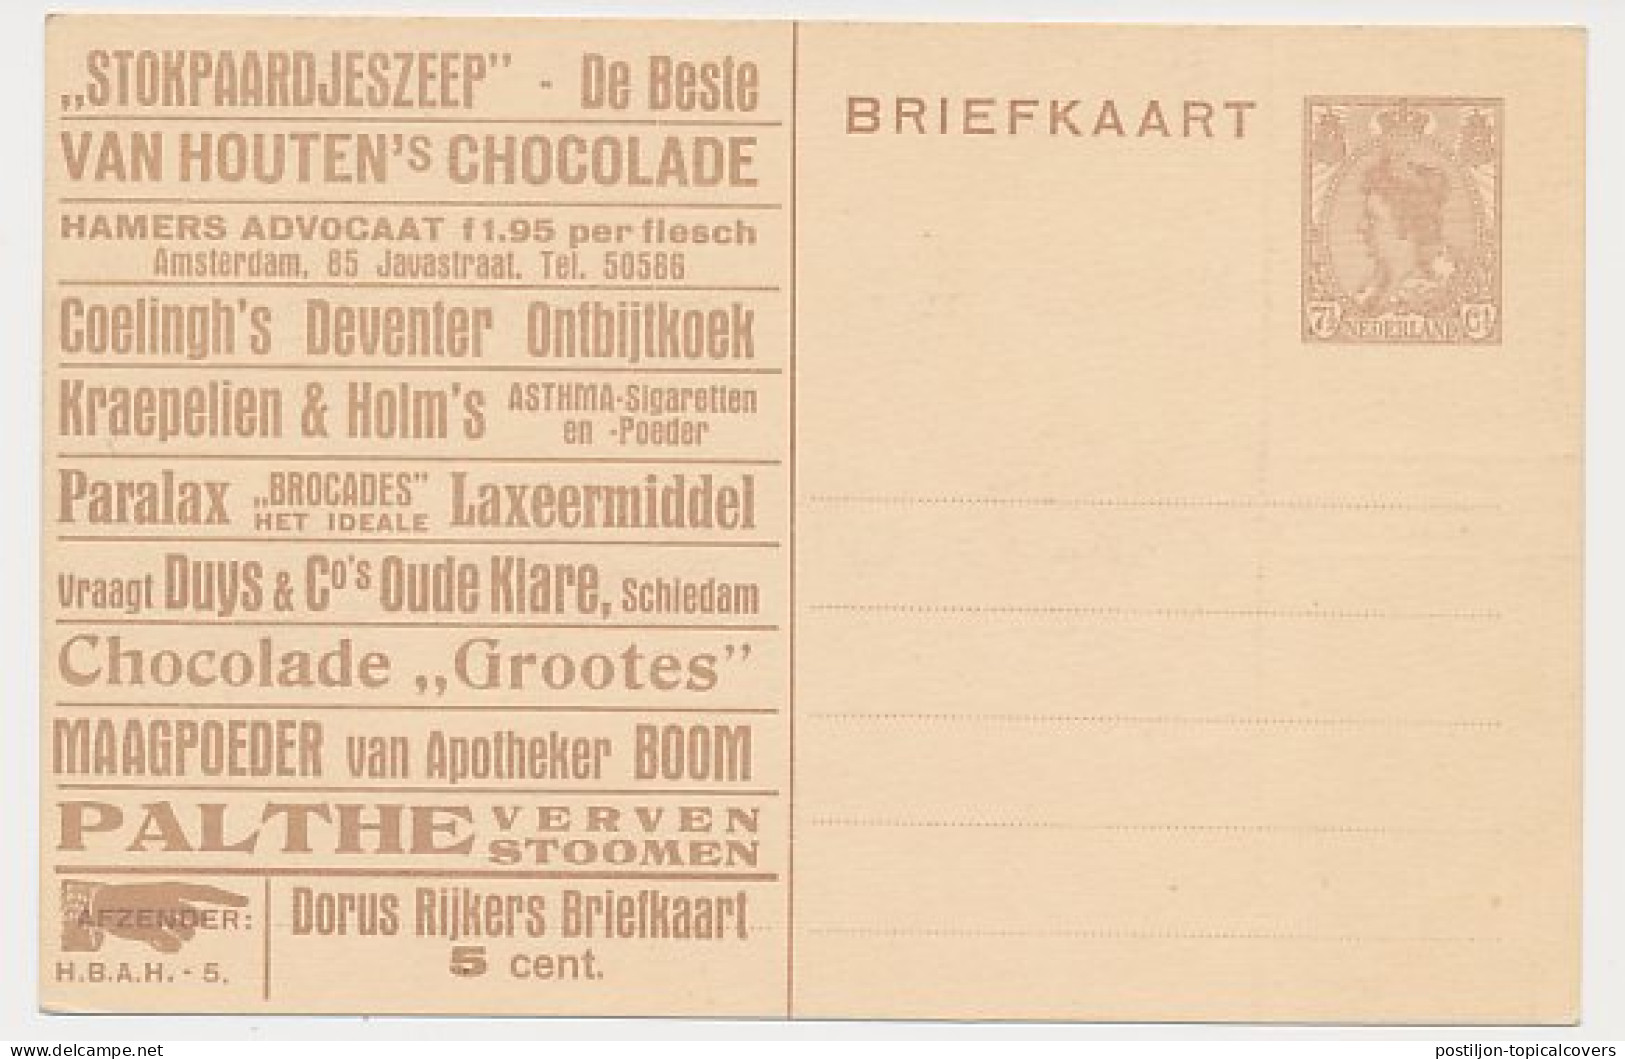 Particuliere Briefkaart Geuzendam DR7 - Postal Stationery